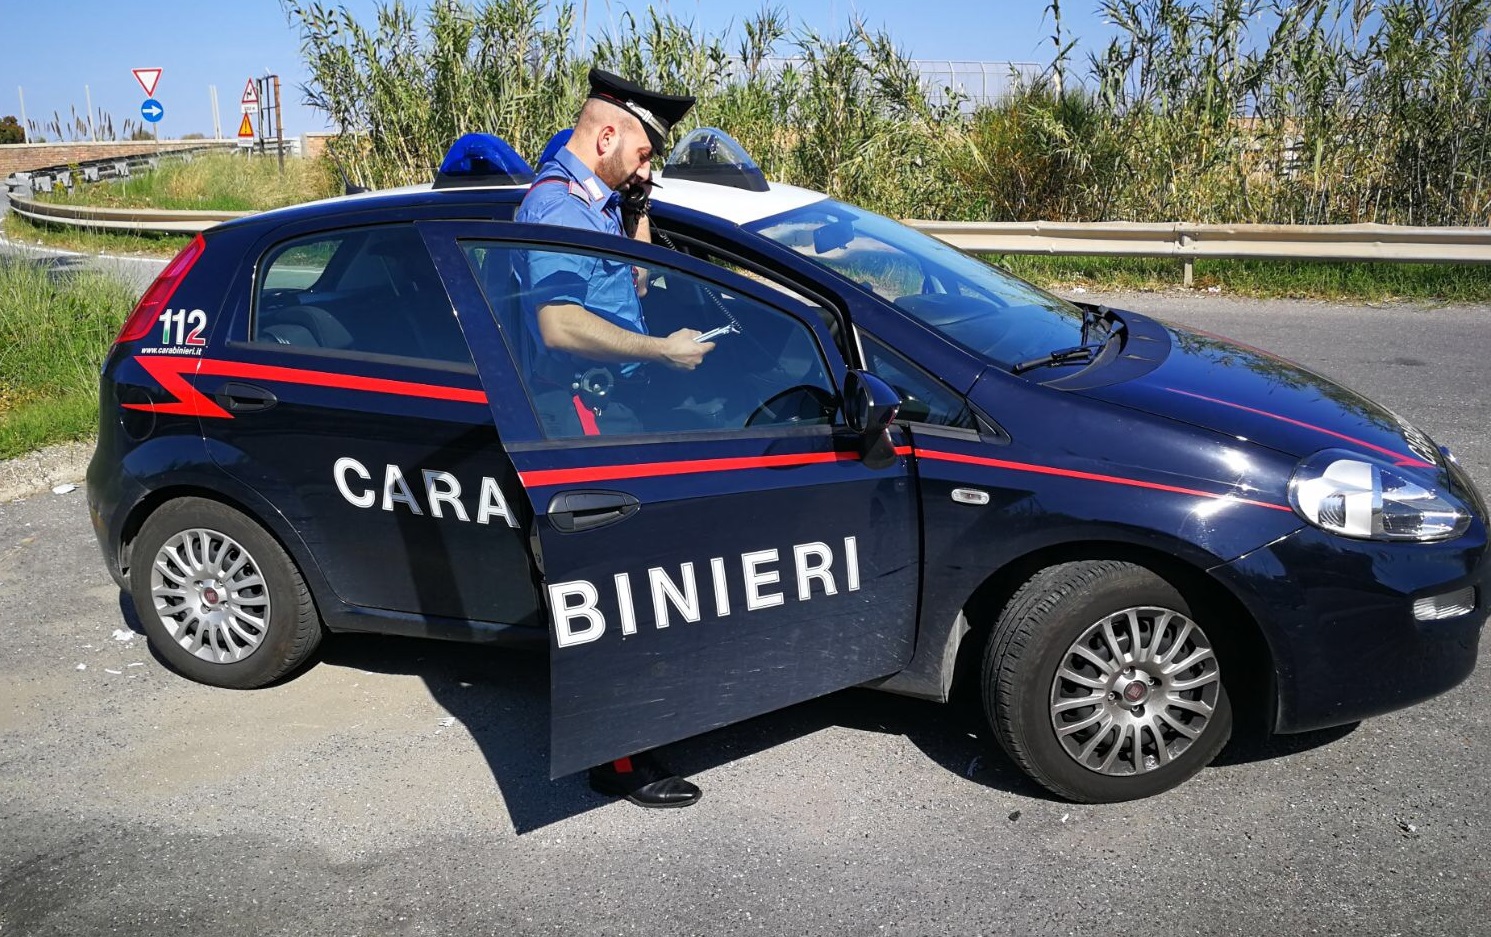 Violenza sessuale aggravata, 57enne arrestato dai carabinieri